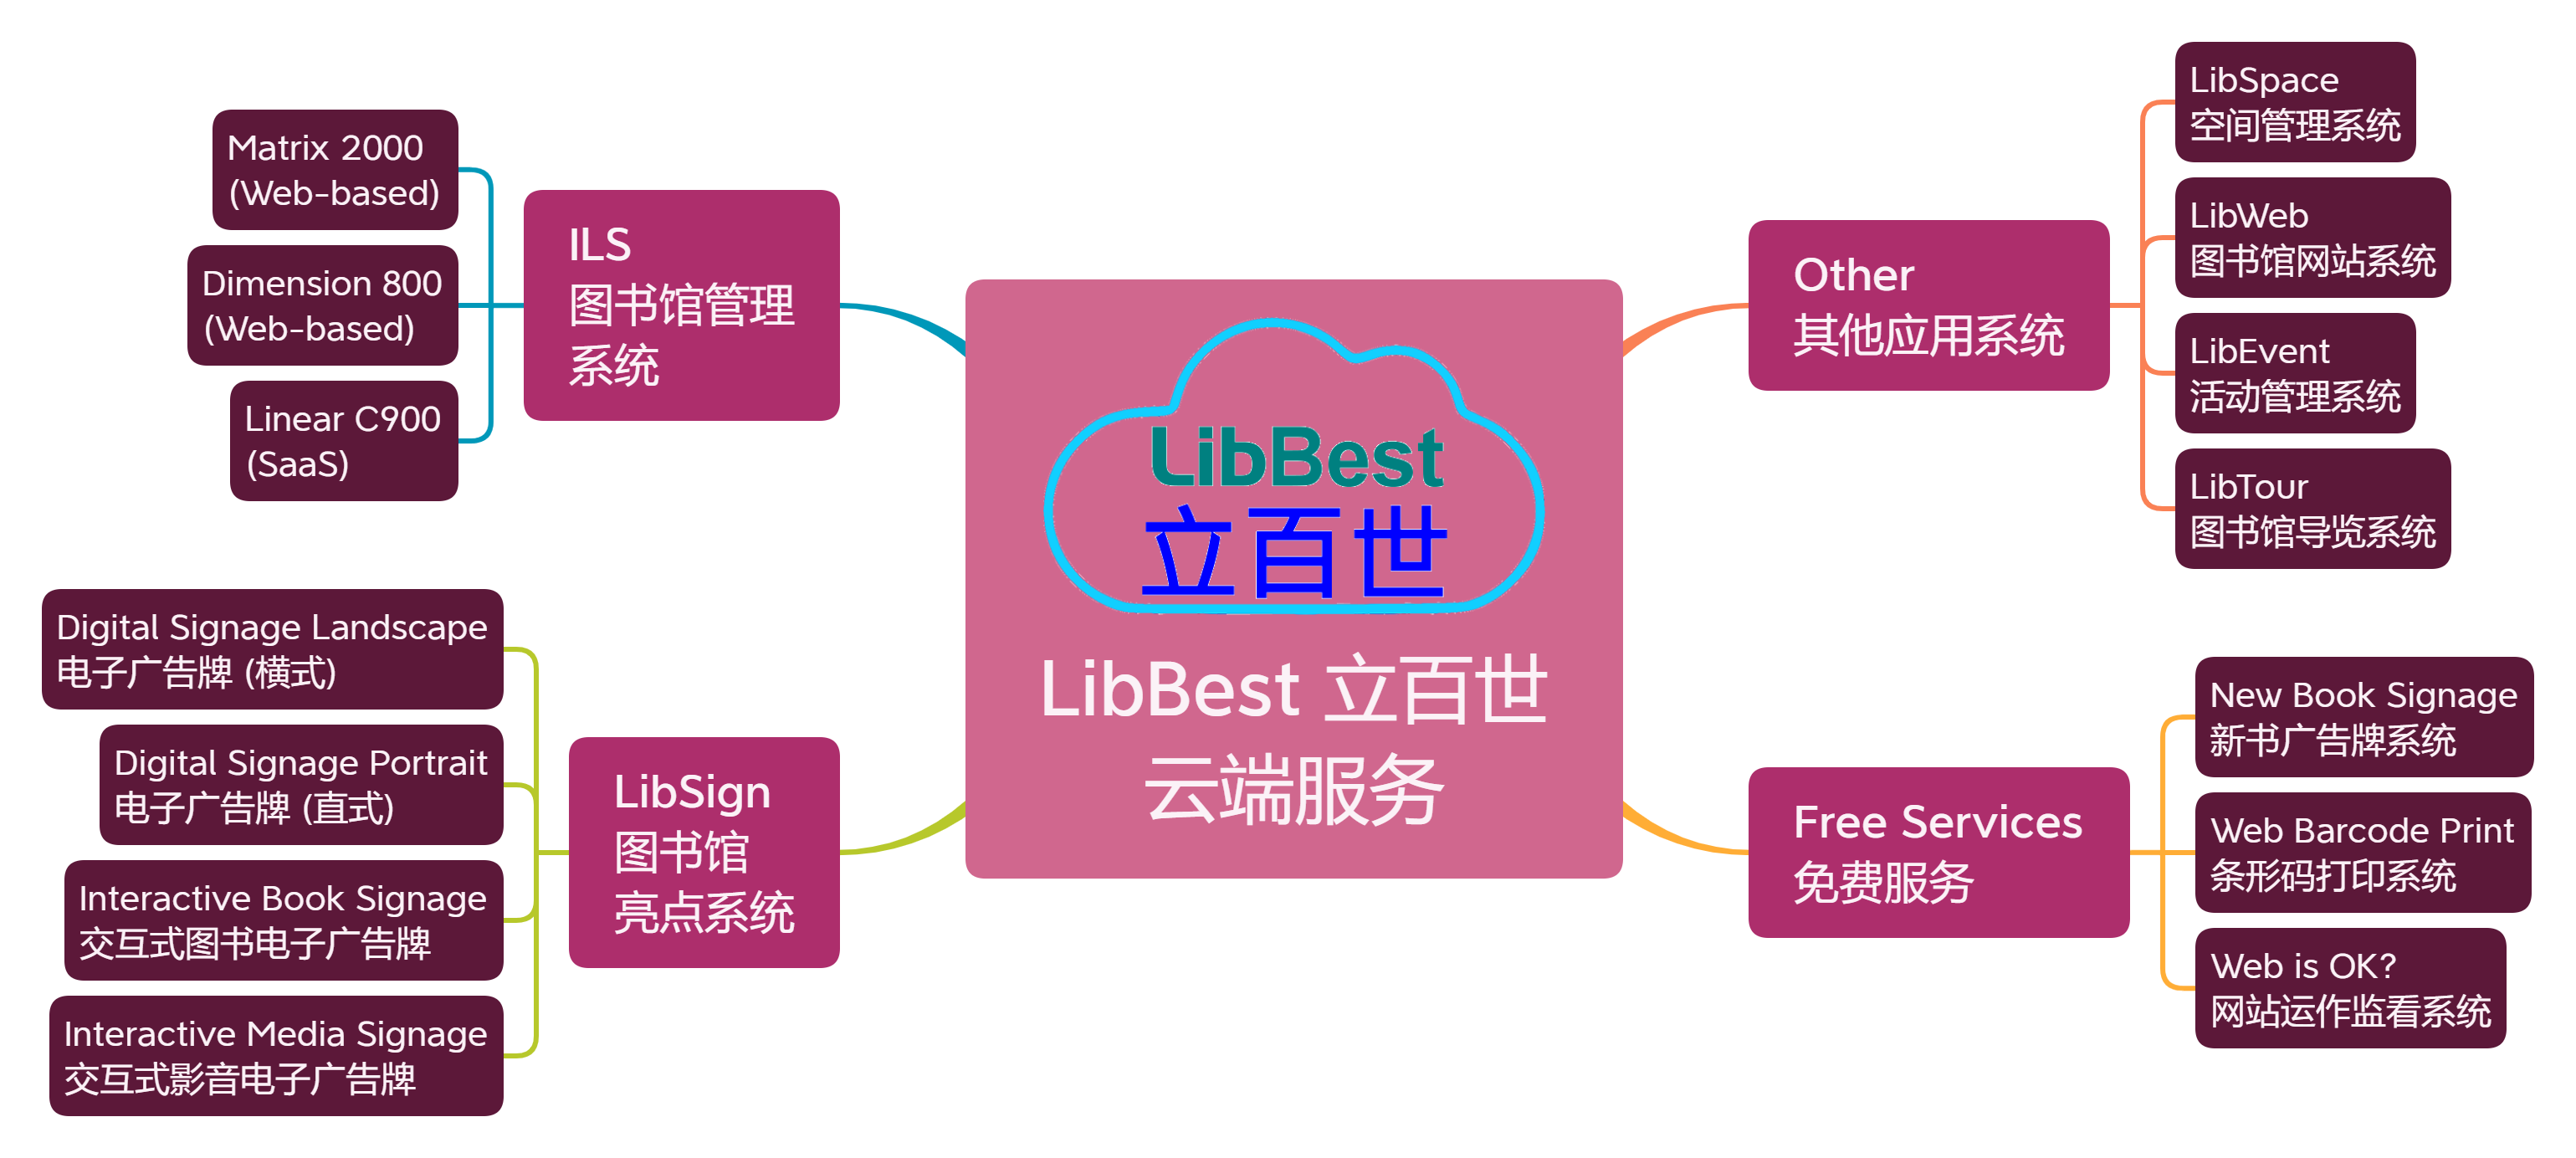 LibBest Cloud Services